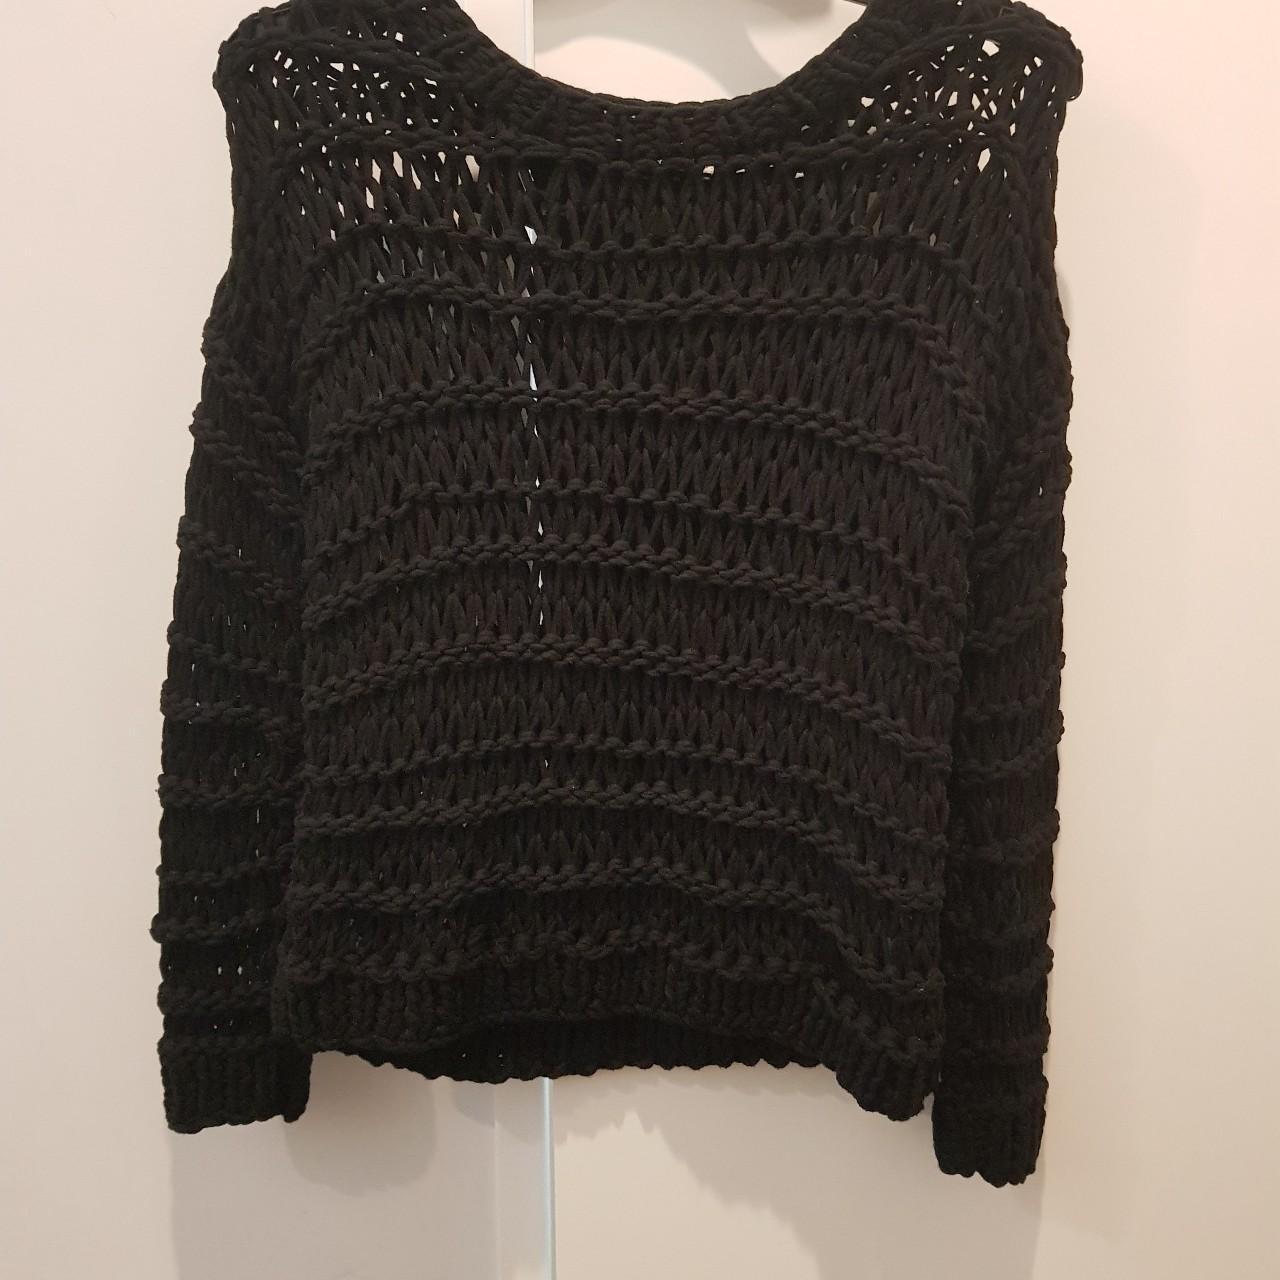 MORRISON size 2 (AU 8-10) black hand knit jumper.... - Depop